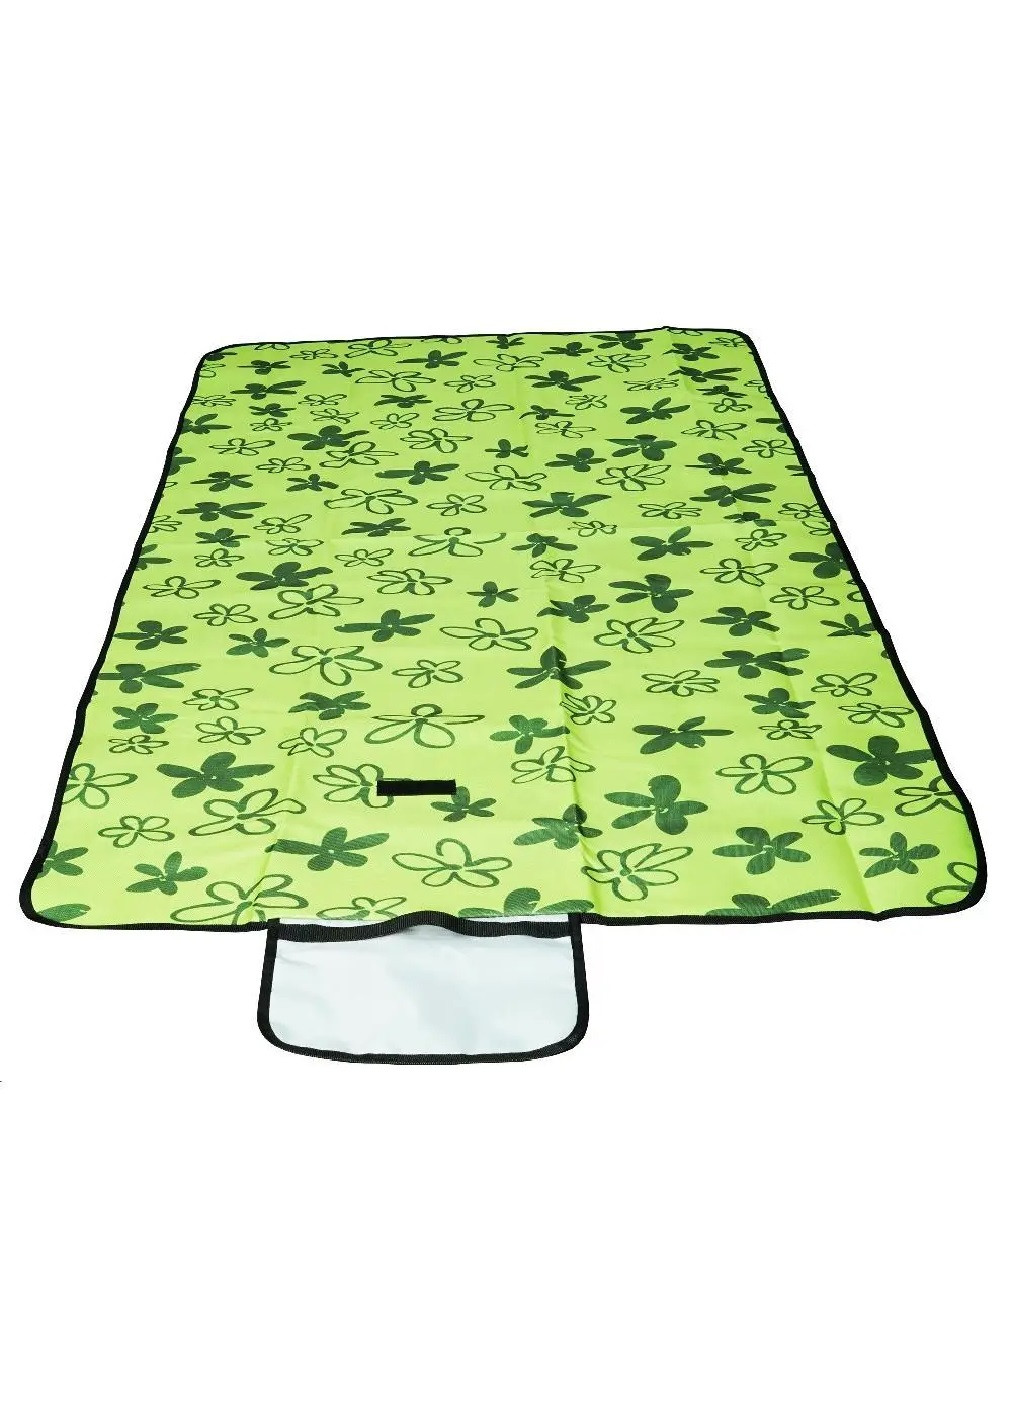 Раскладной коврик покрывало подстилка водоотталкивающий для пикника отдыха с ручкой 145Х80 см (474441-Prob) Зеленый Unbranded (258461334)